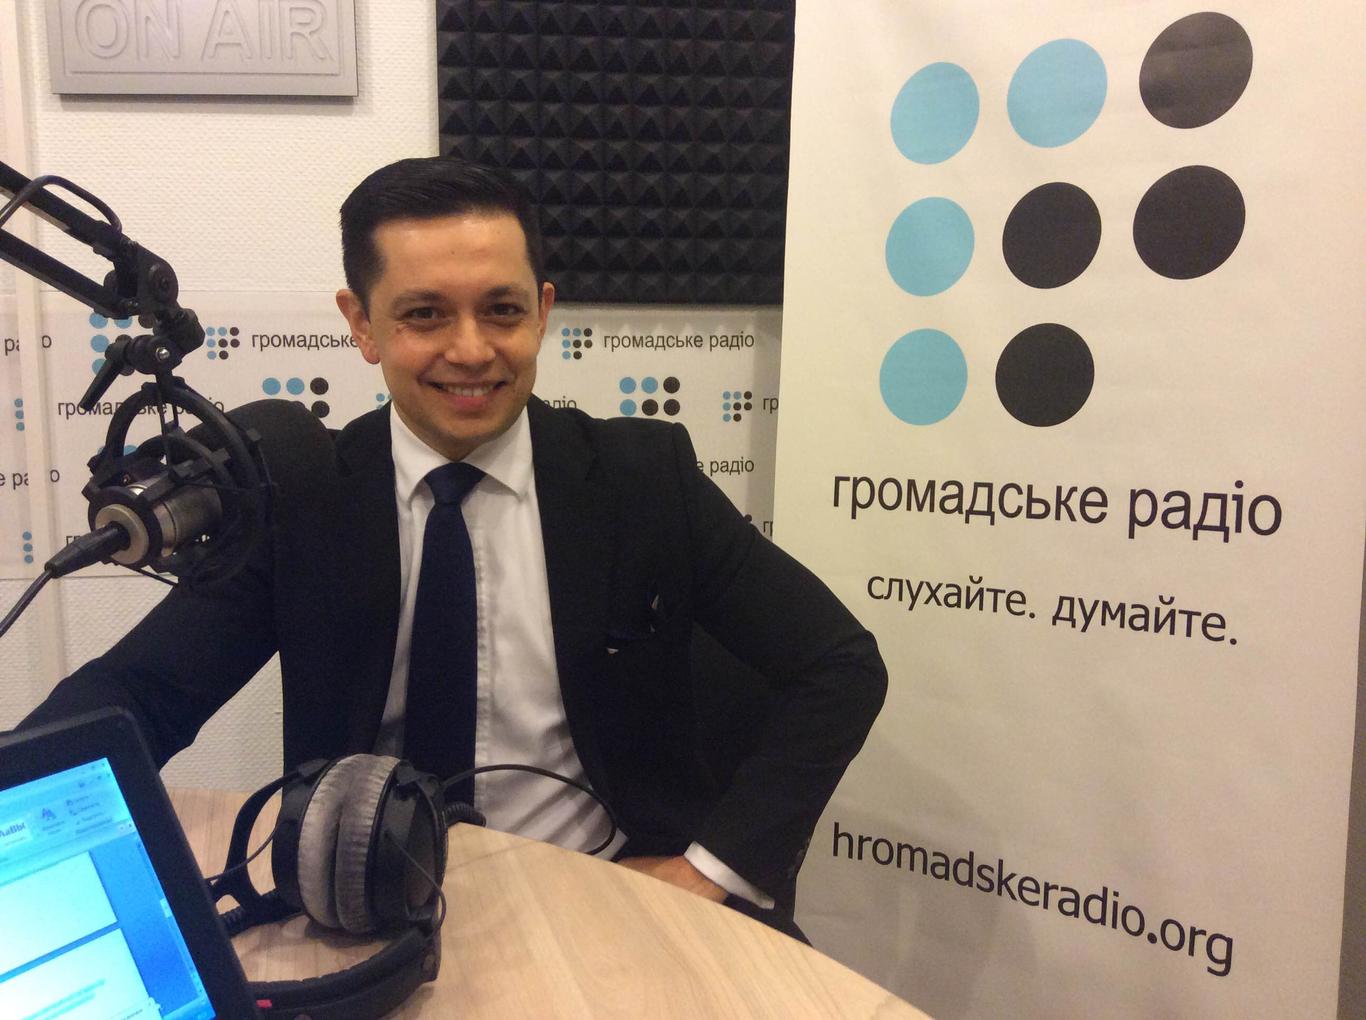 «Chiriklo» — единственное в Украине ромское СМИ, — директор радио